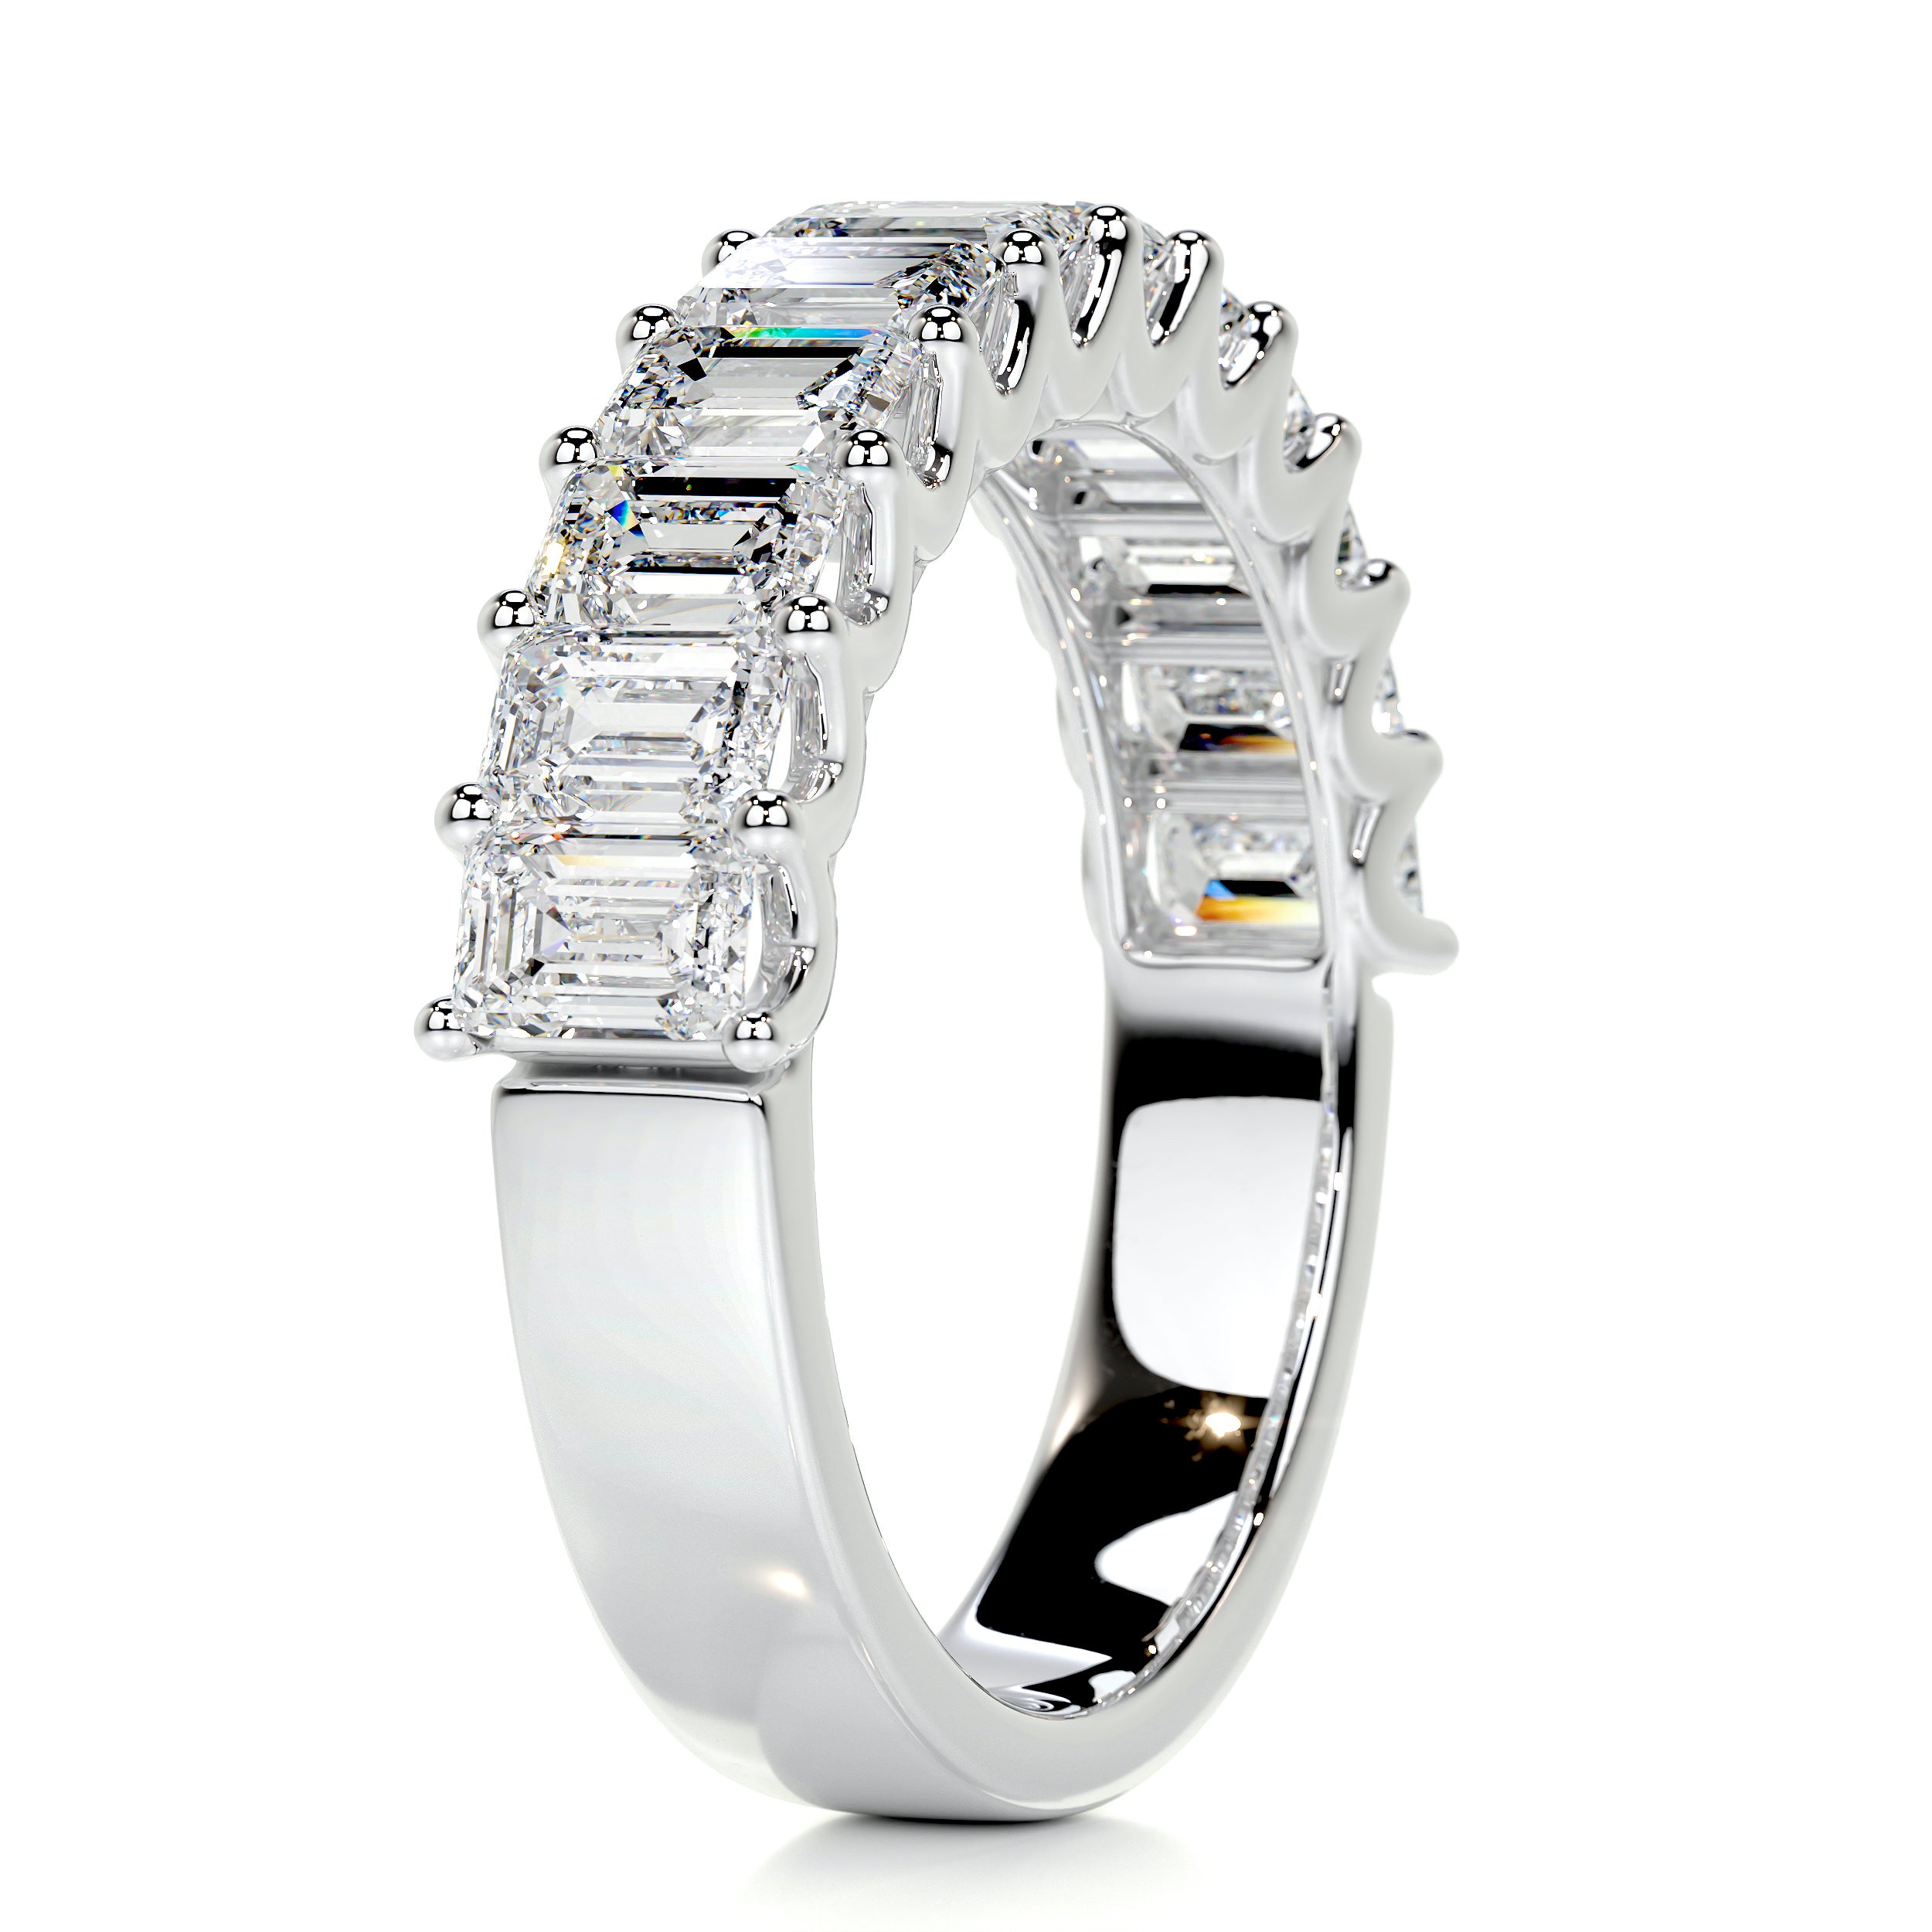 Gina Half Eternity Wedding Ring -18K White Gold